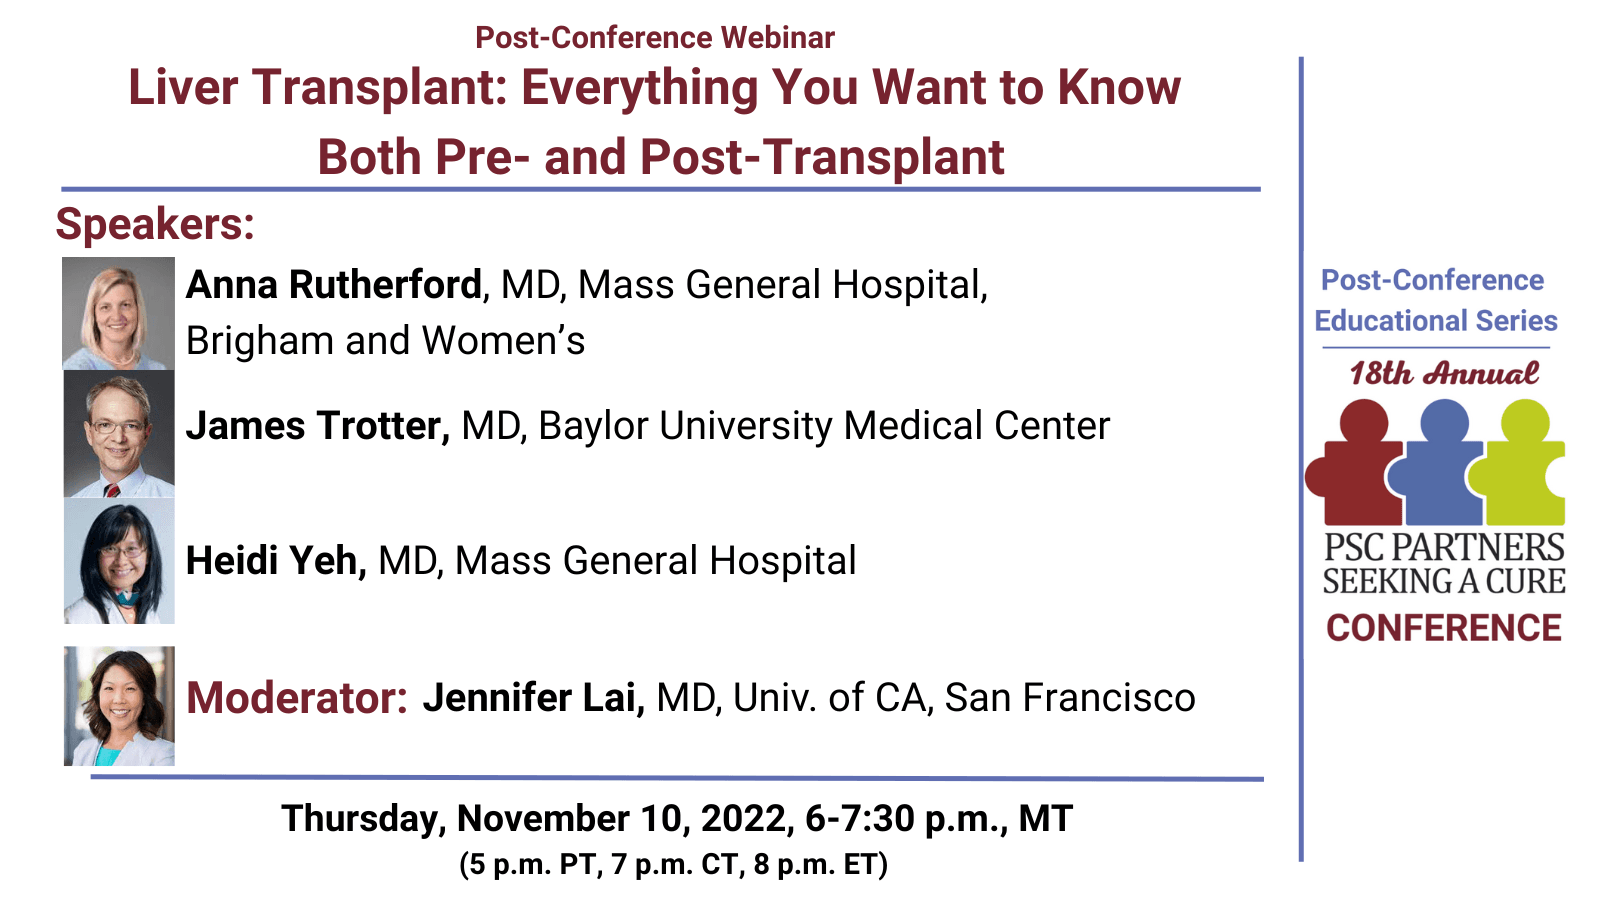 Post-Conference Webinar: Liver Transplantation